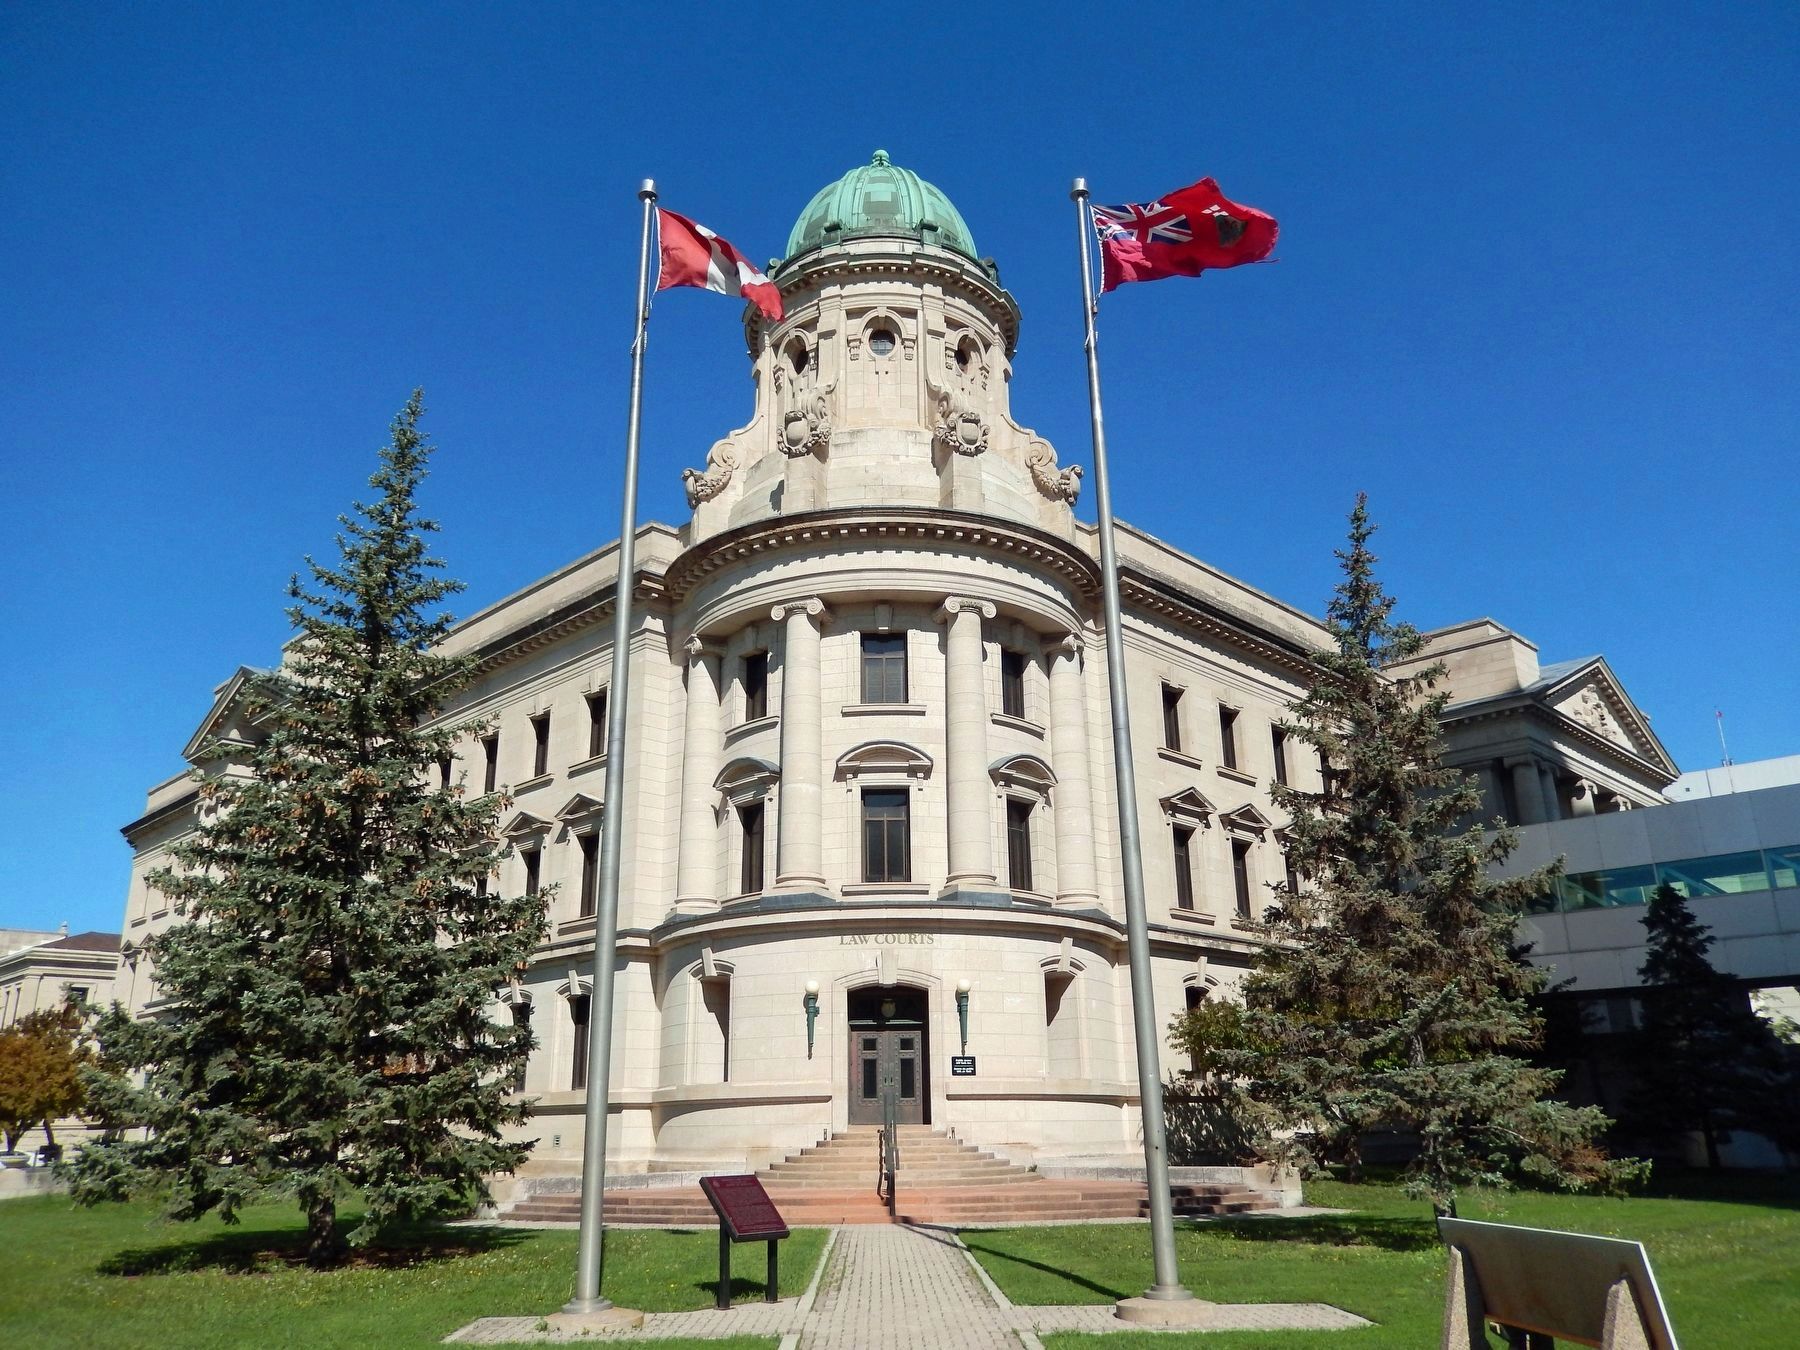 Winnipeg Law Courts / Le Palais de Justice de Winnipeg image. Click for full size.